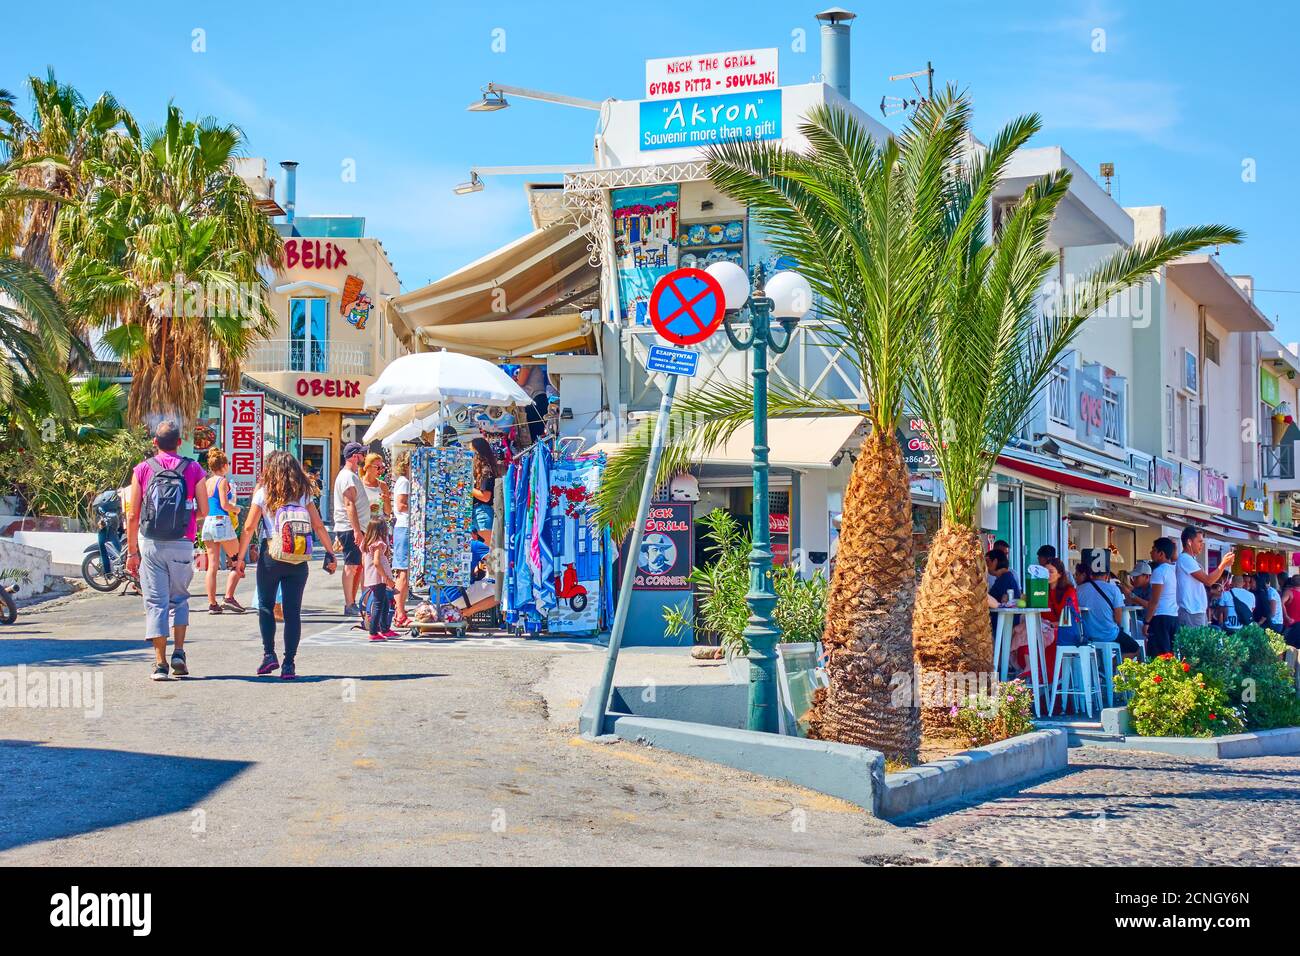 Fira, île de Santorini, Grèce - 25 avril 2018 : rue commerçante avec des personnes à pied à Fira (Thera) Banque D'Images